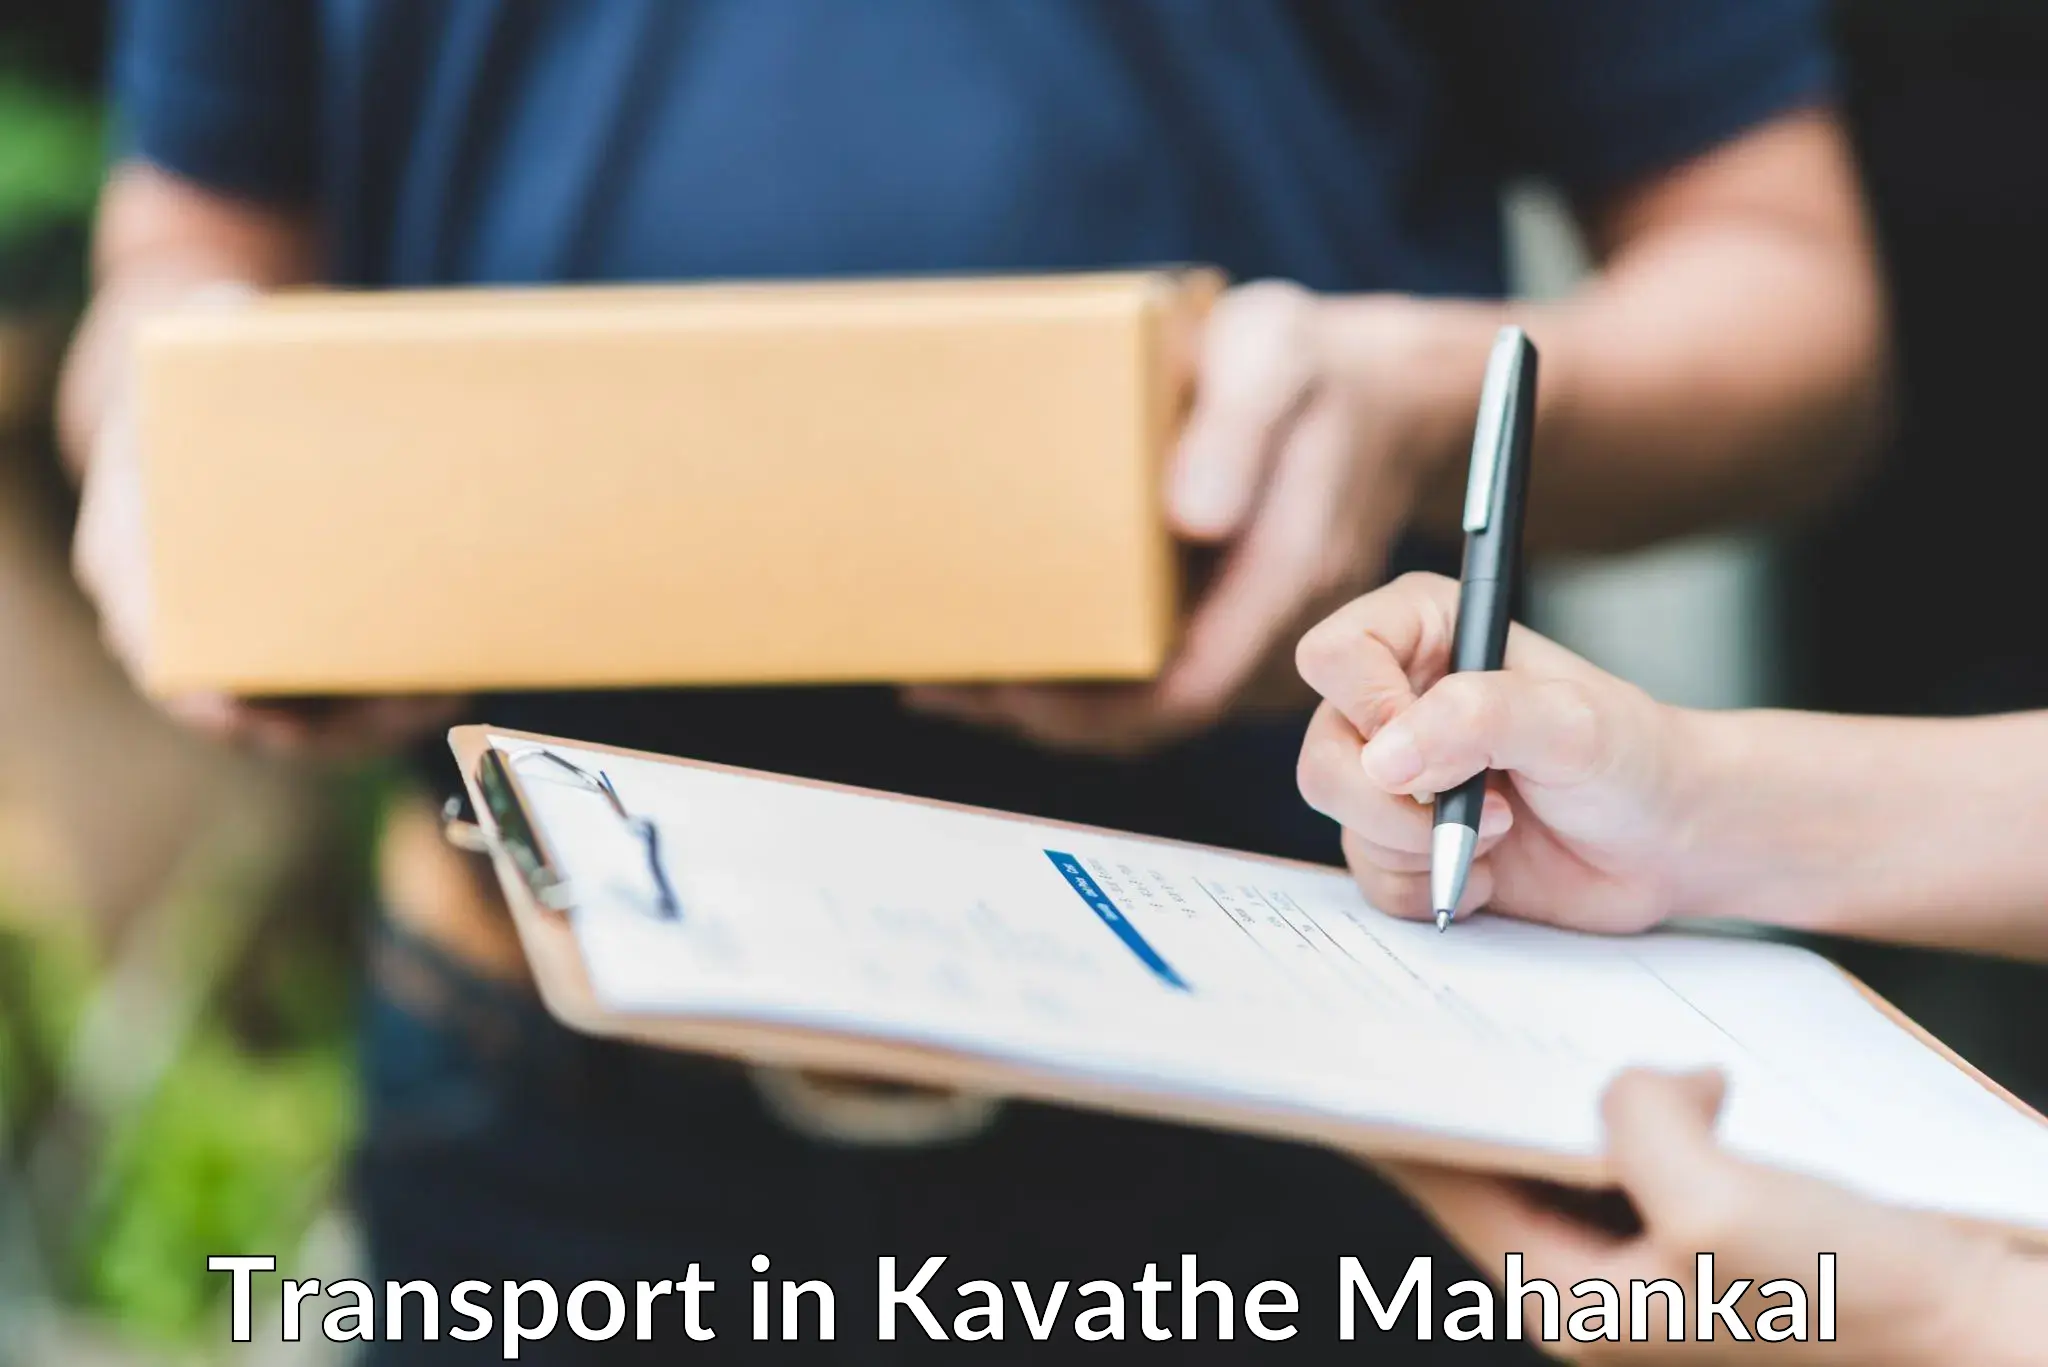 Parcel transport services in Kavathe Mahankal